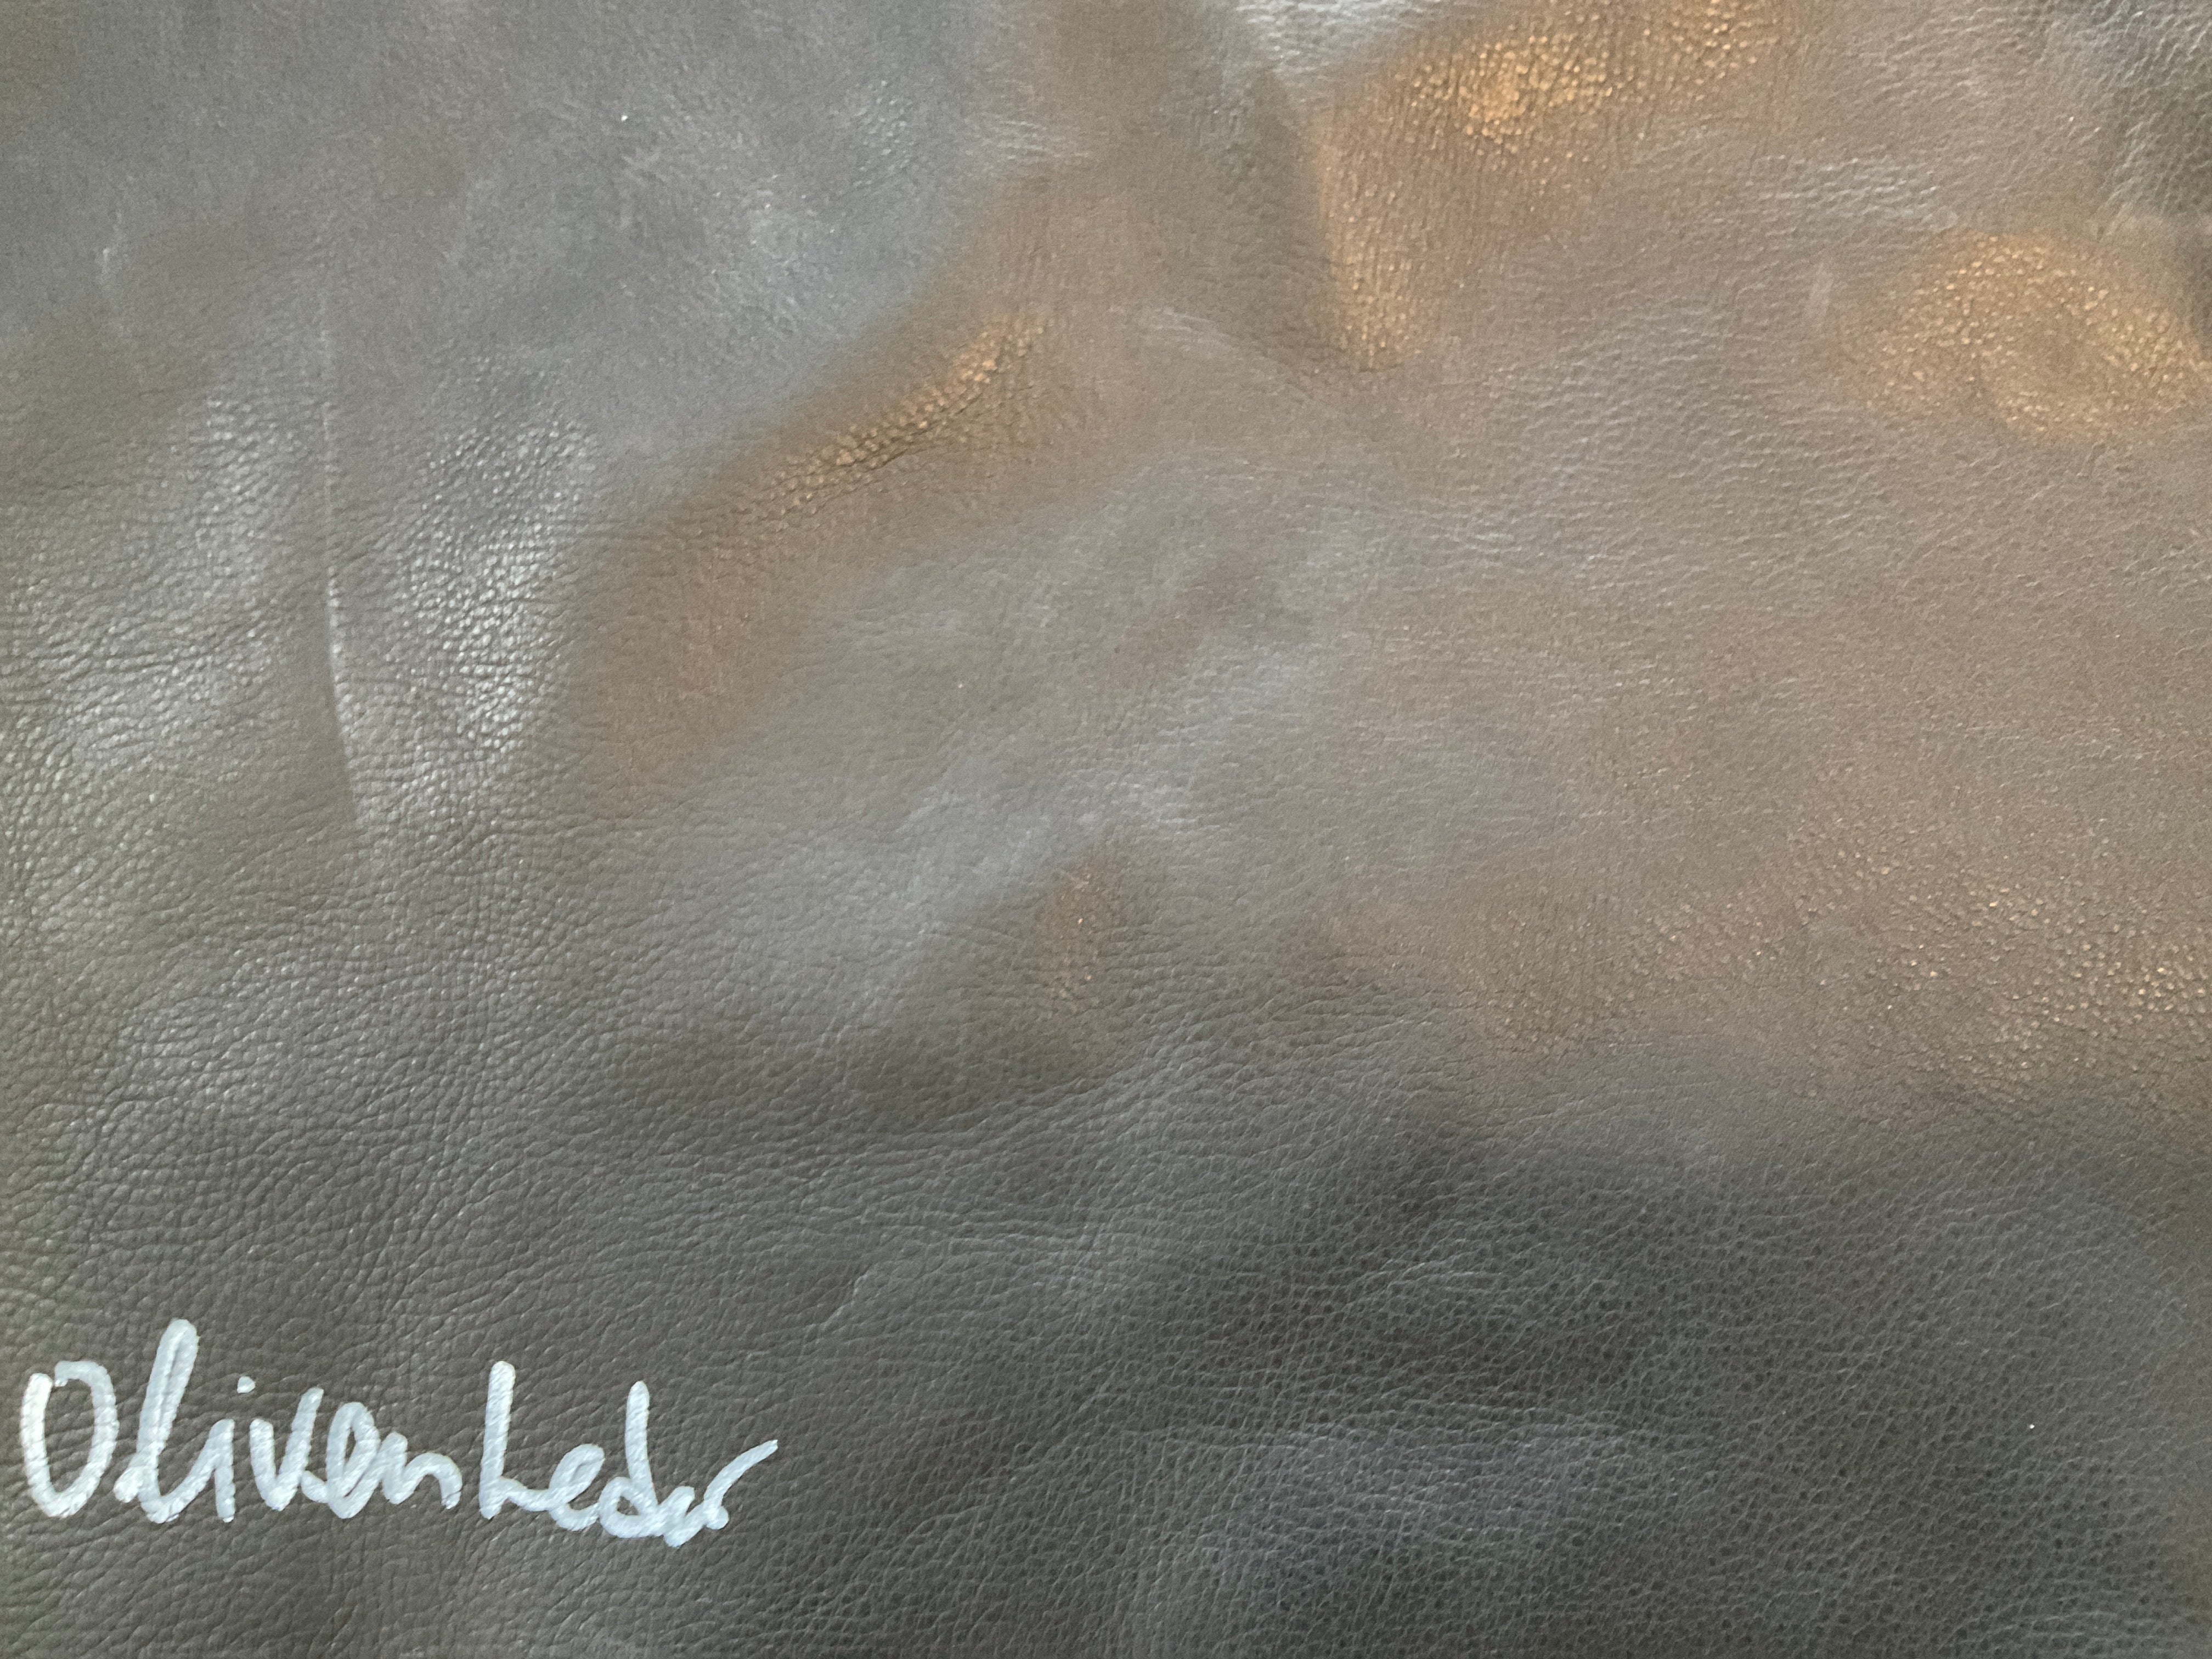 Olivenleder- Kalamata vegetable tanned leather - 1.4./ 1.6 and 1.2/1.4mm